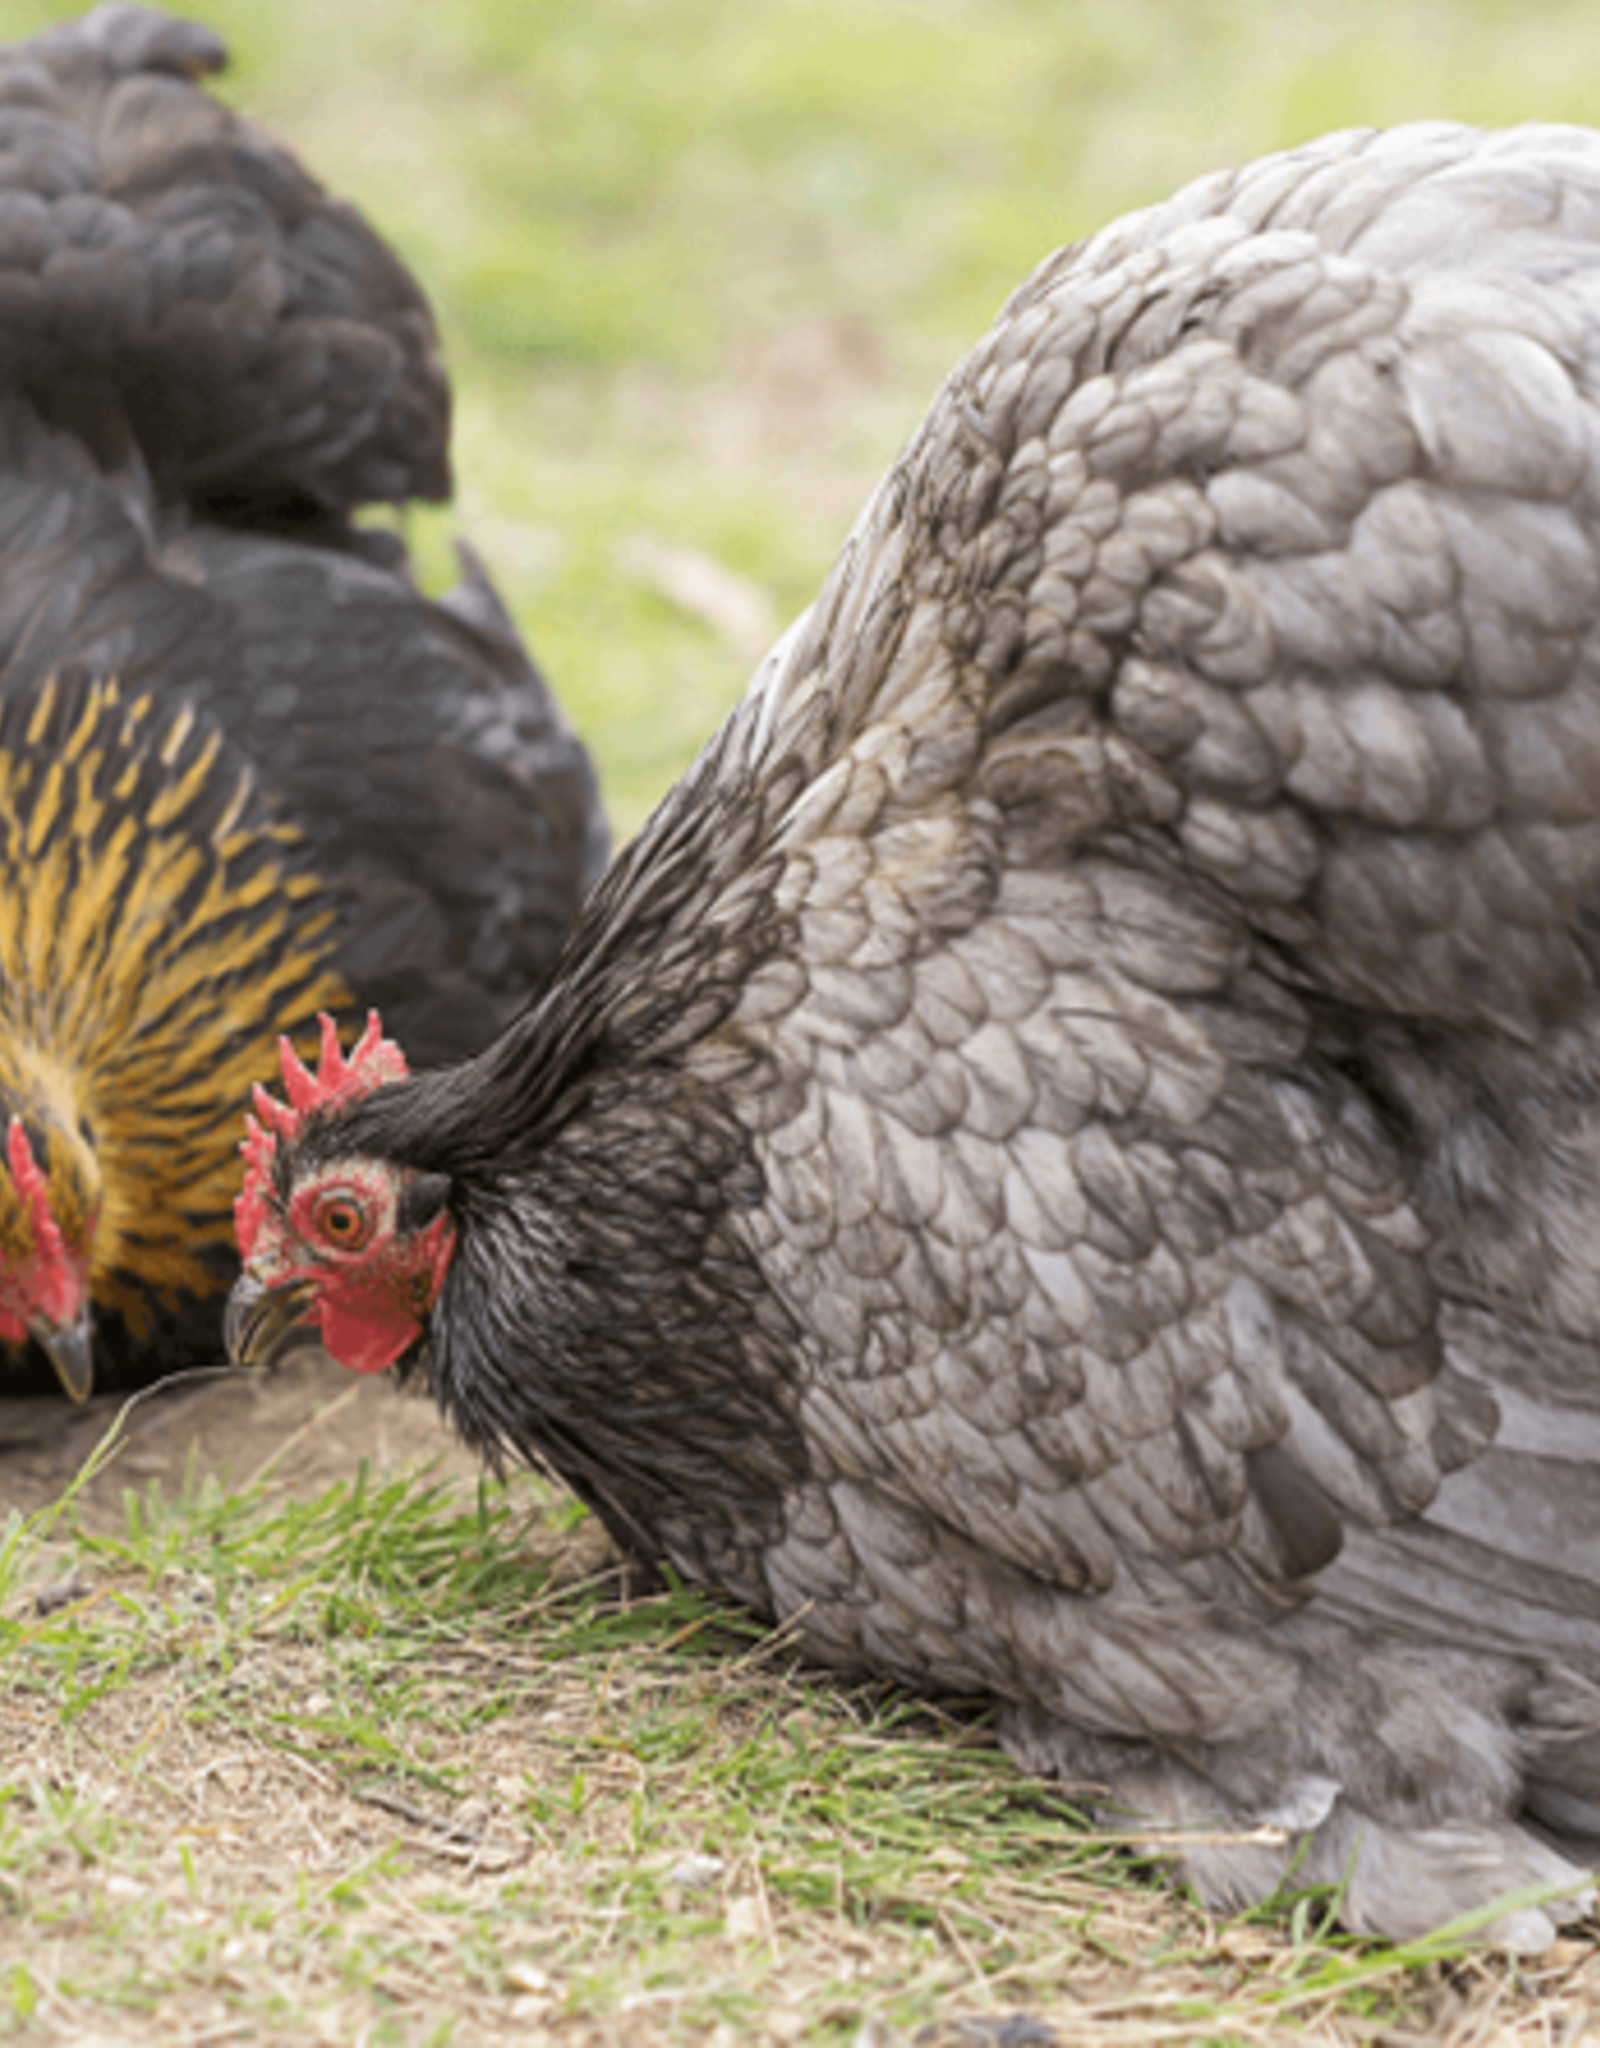 Buff Brahma Chicks For Sale -Gentle Giants- Valley Hatchery